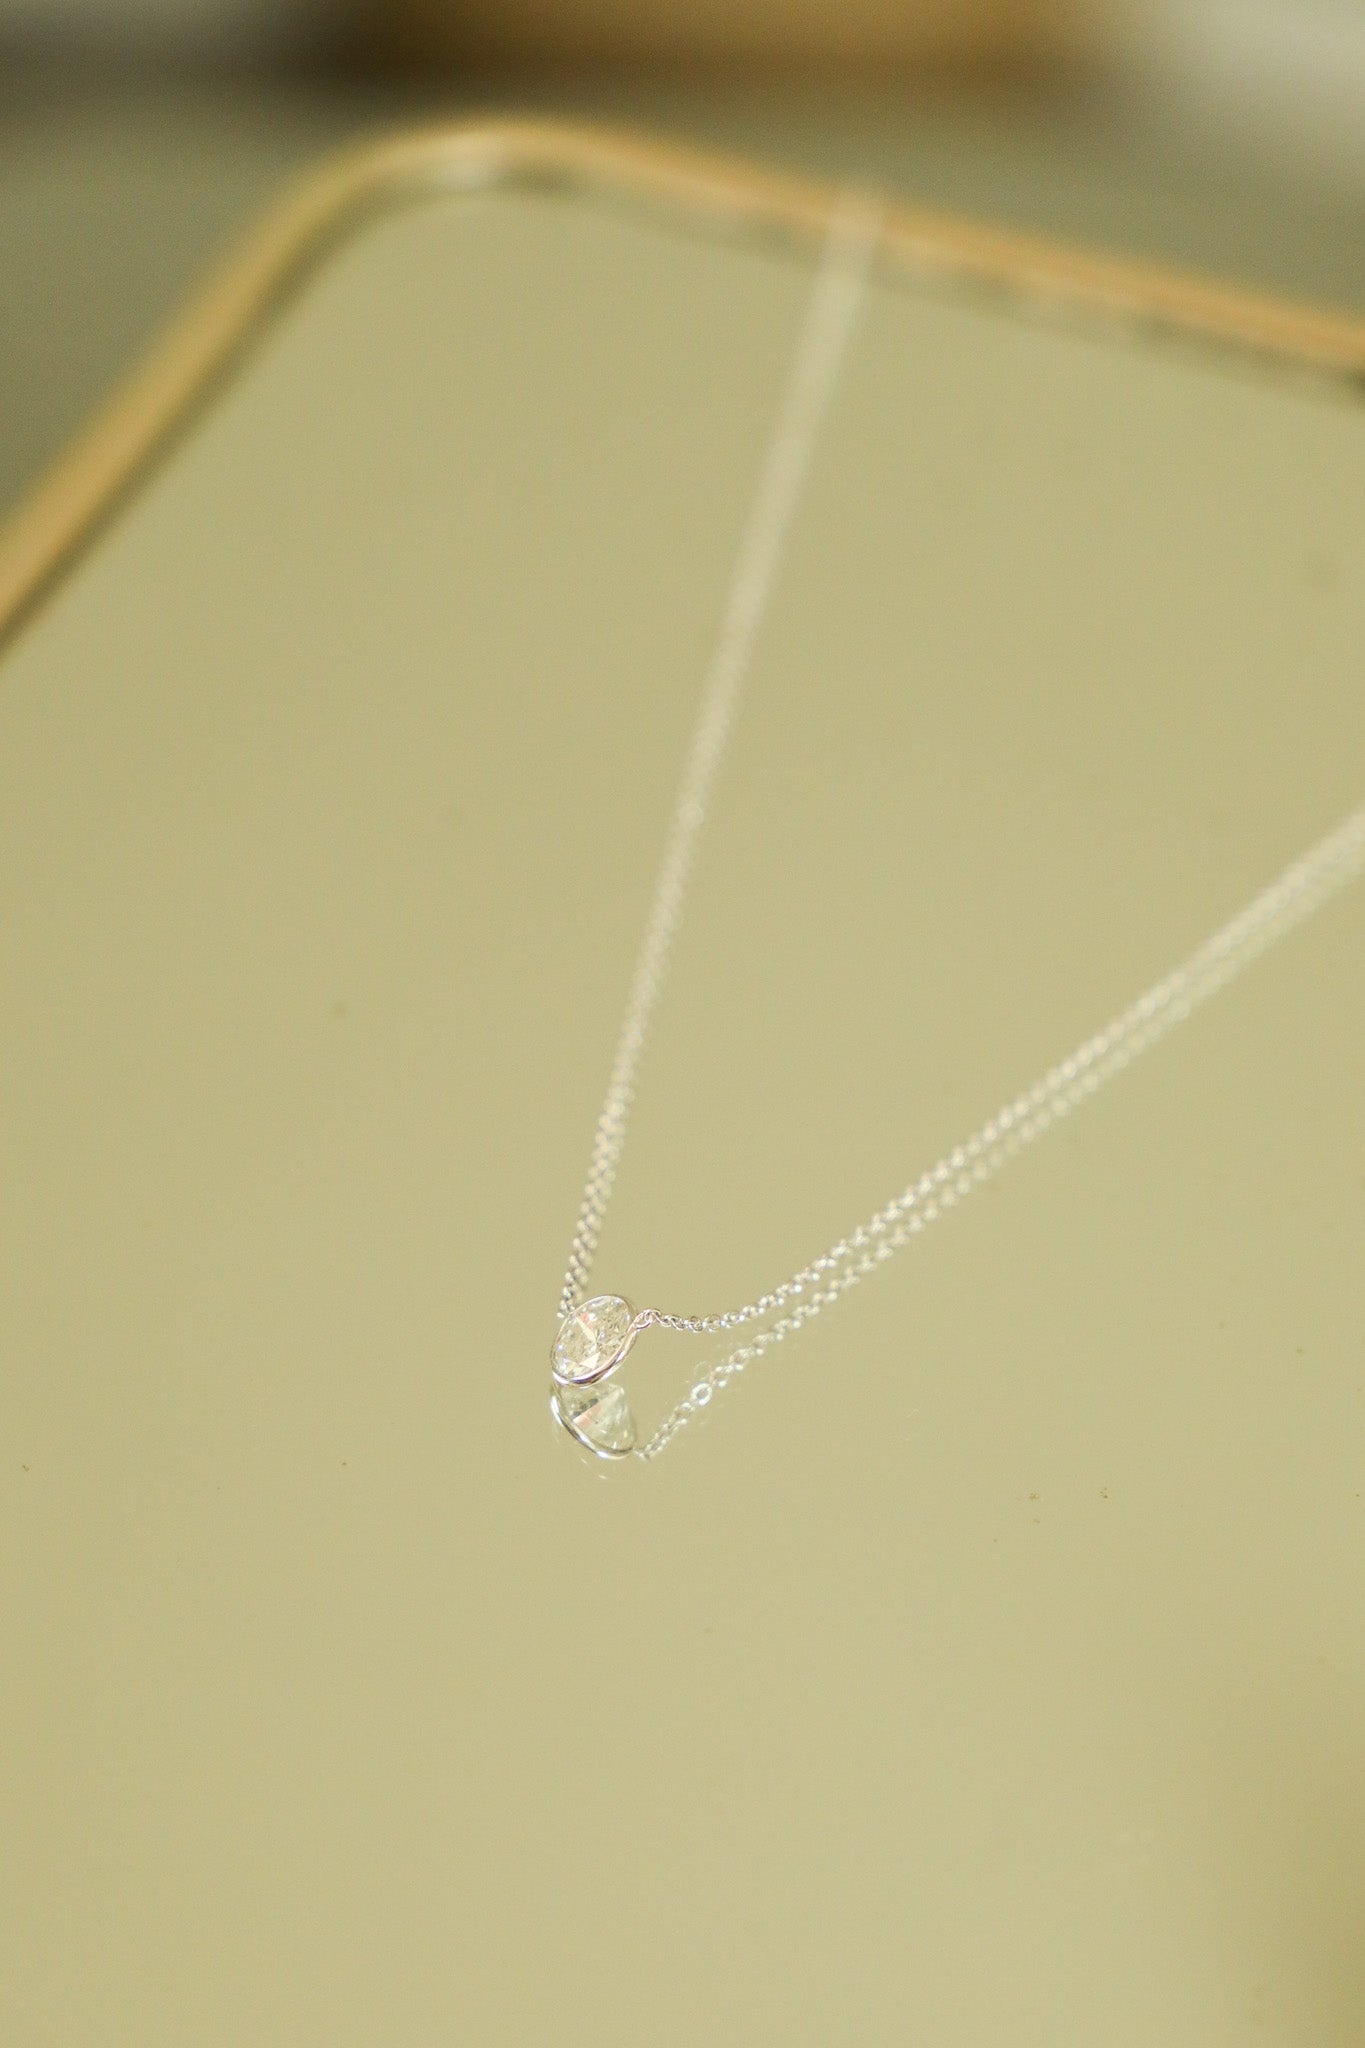 N046 - 14k WG Necklace w/1 Bezel Set Round Diamond 0.875cts